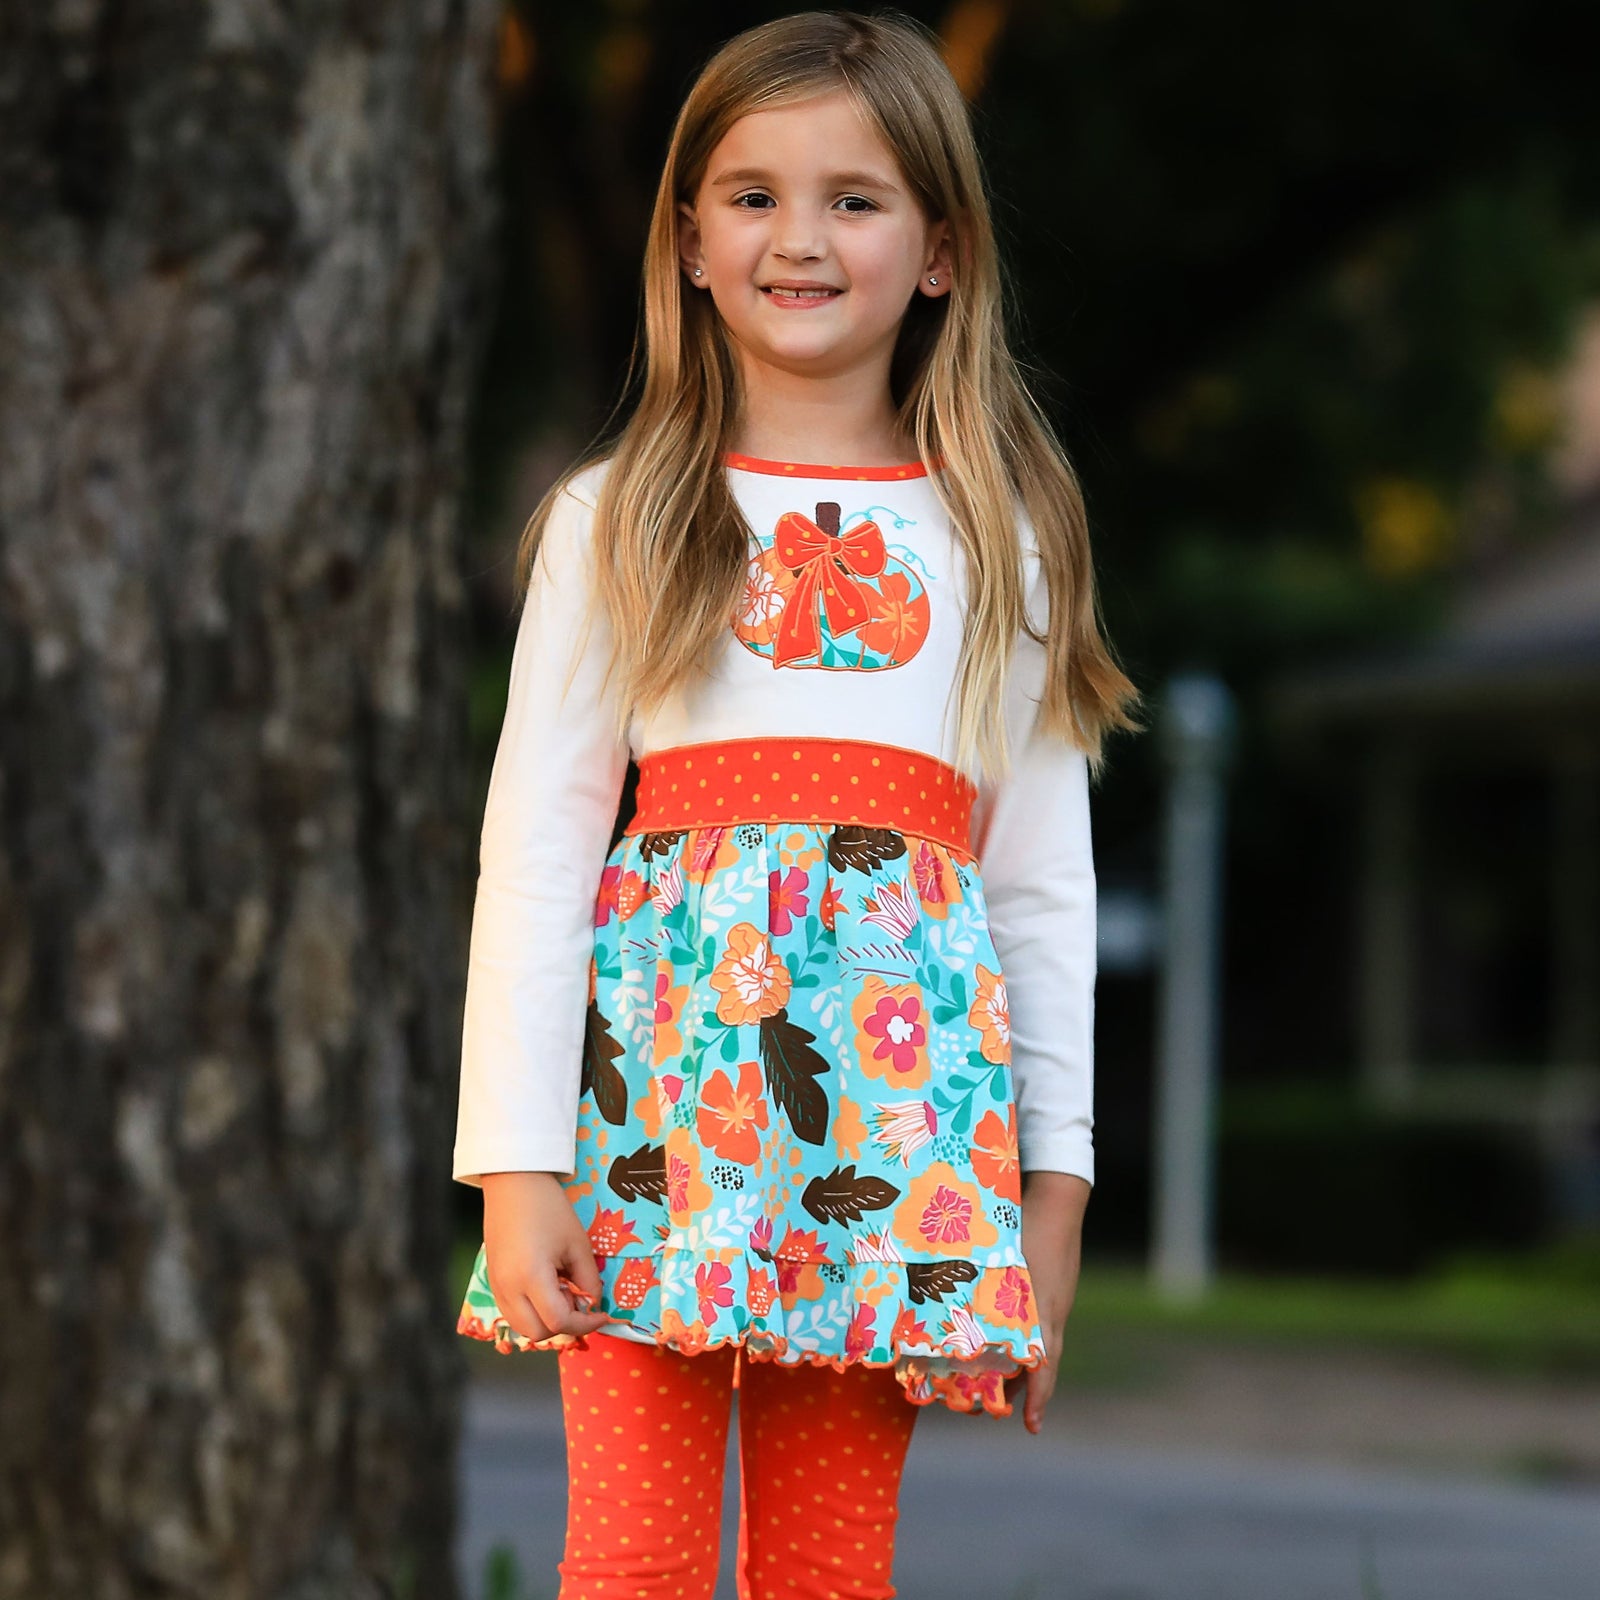 AnnLoren Little and Big Girls Vibrant Autumn Floral Pumpkin Thanksgiving Dress & Leggings